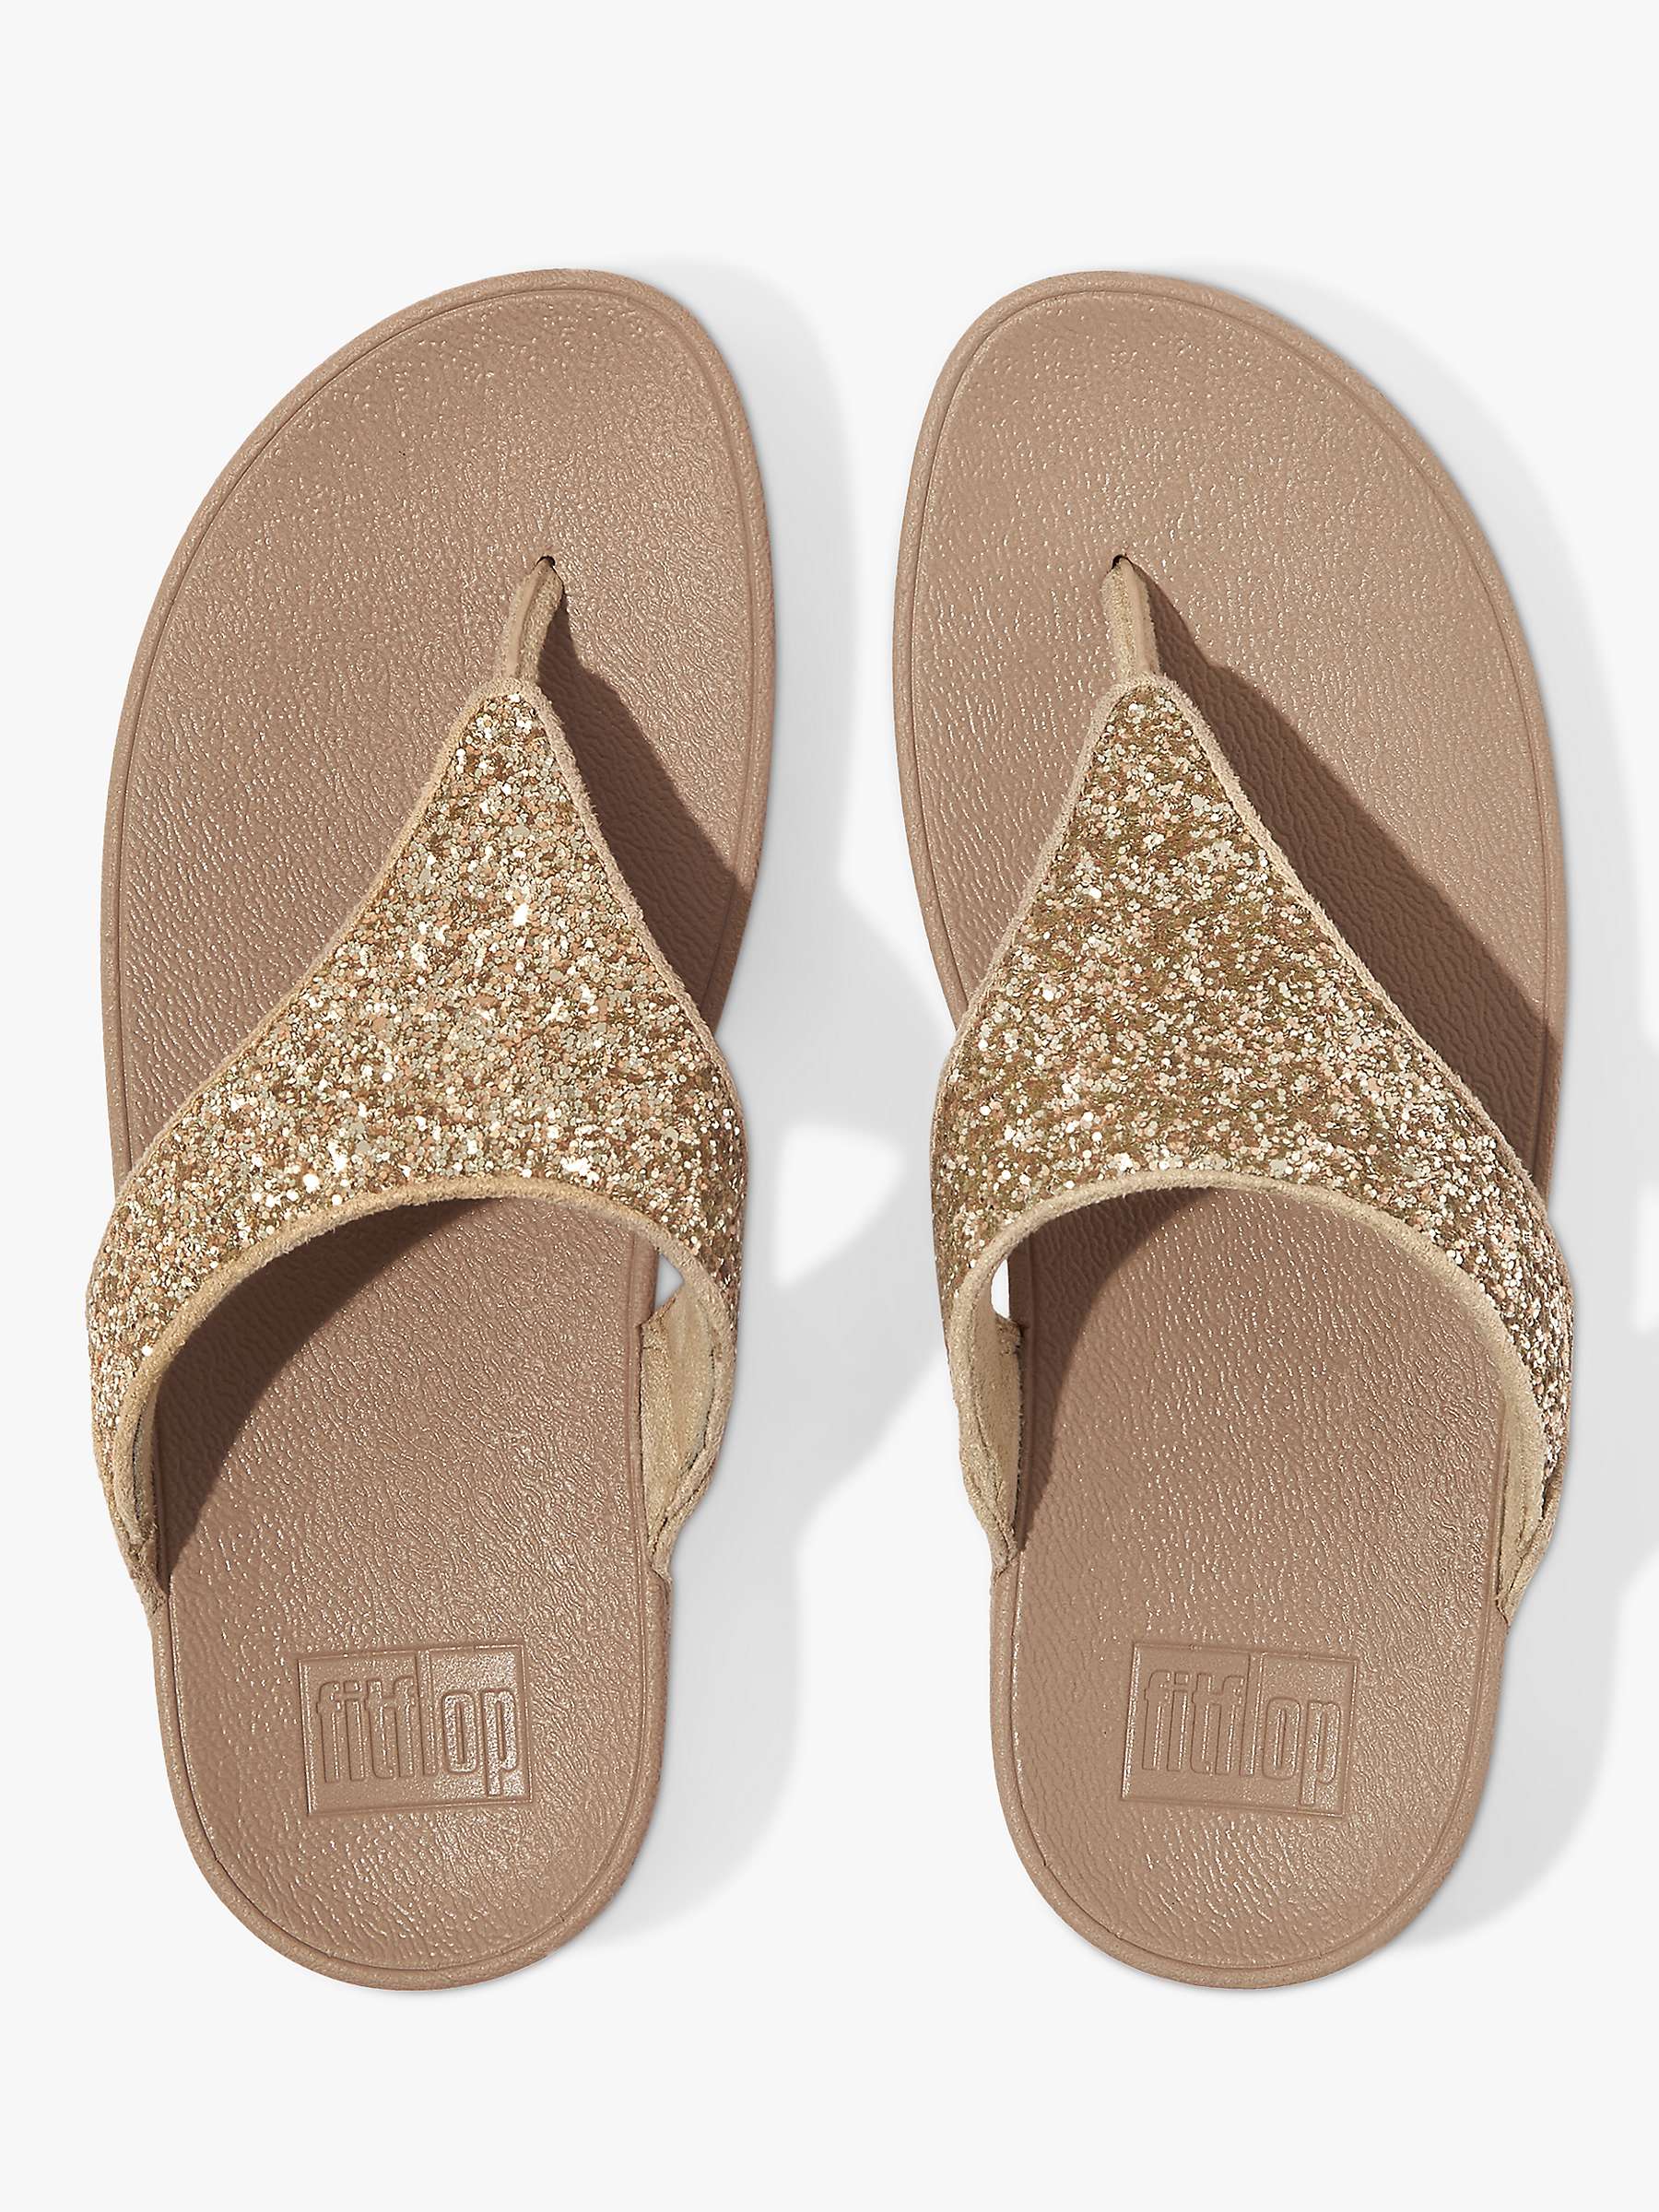 Buy FitFlop Lulu Toe Post Flatform Sandals Online at johnlewis.com